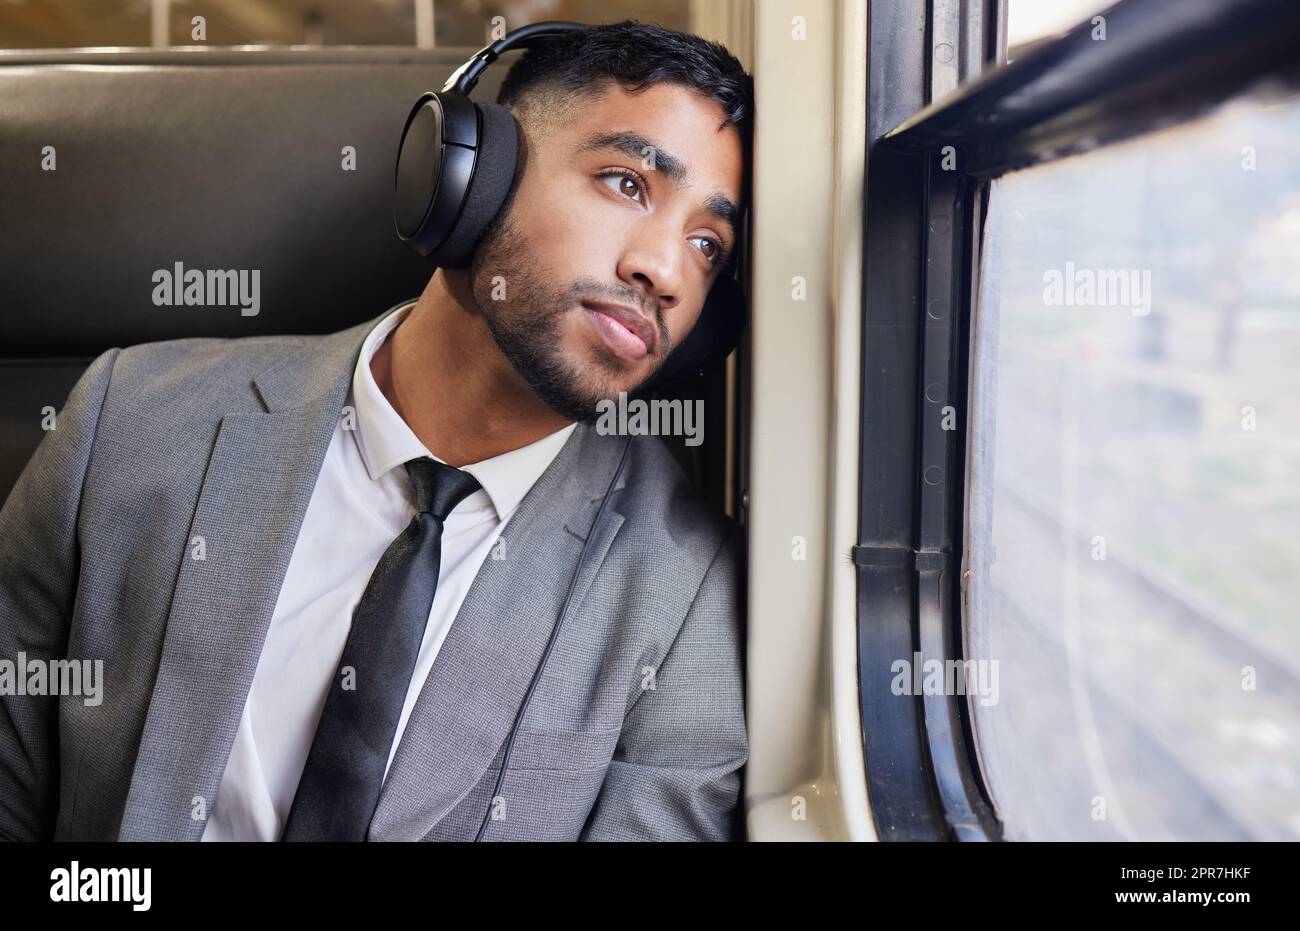 In tiefer Kontemplation während seines Arbeitsweges. Ein junger Geschäftsmann, der Kopfhörer trägt, während er während seines Arbeitsweges aus dem Fenster auf einen Zug starrt. Stockfoto